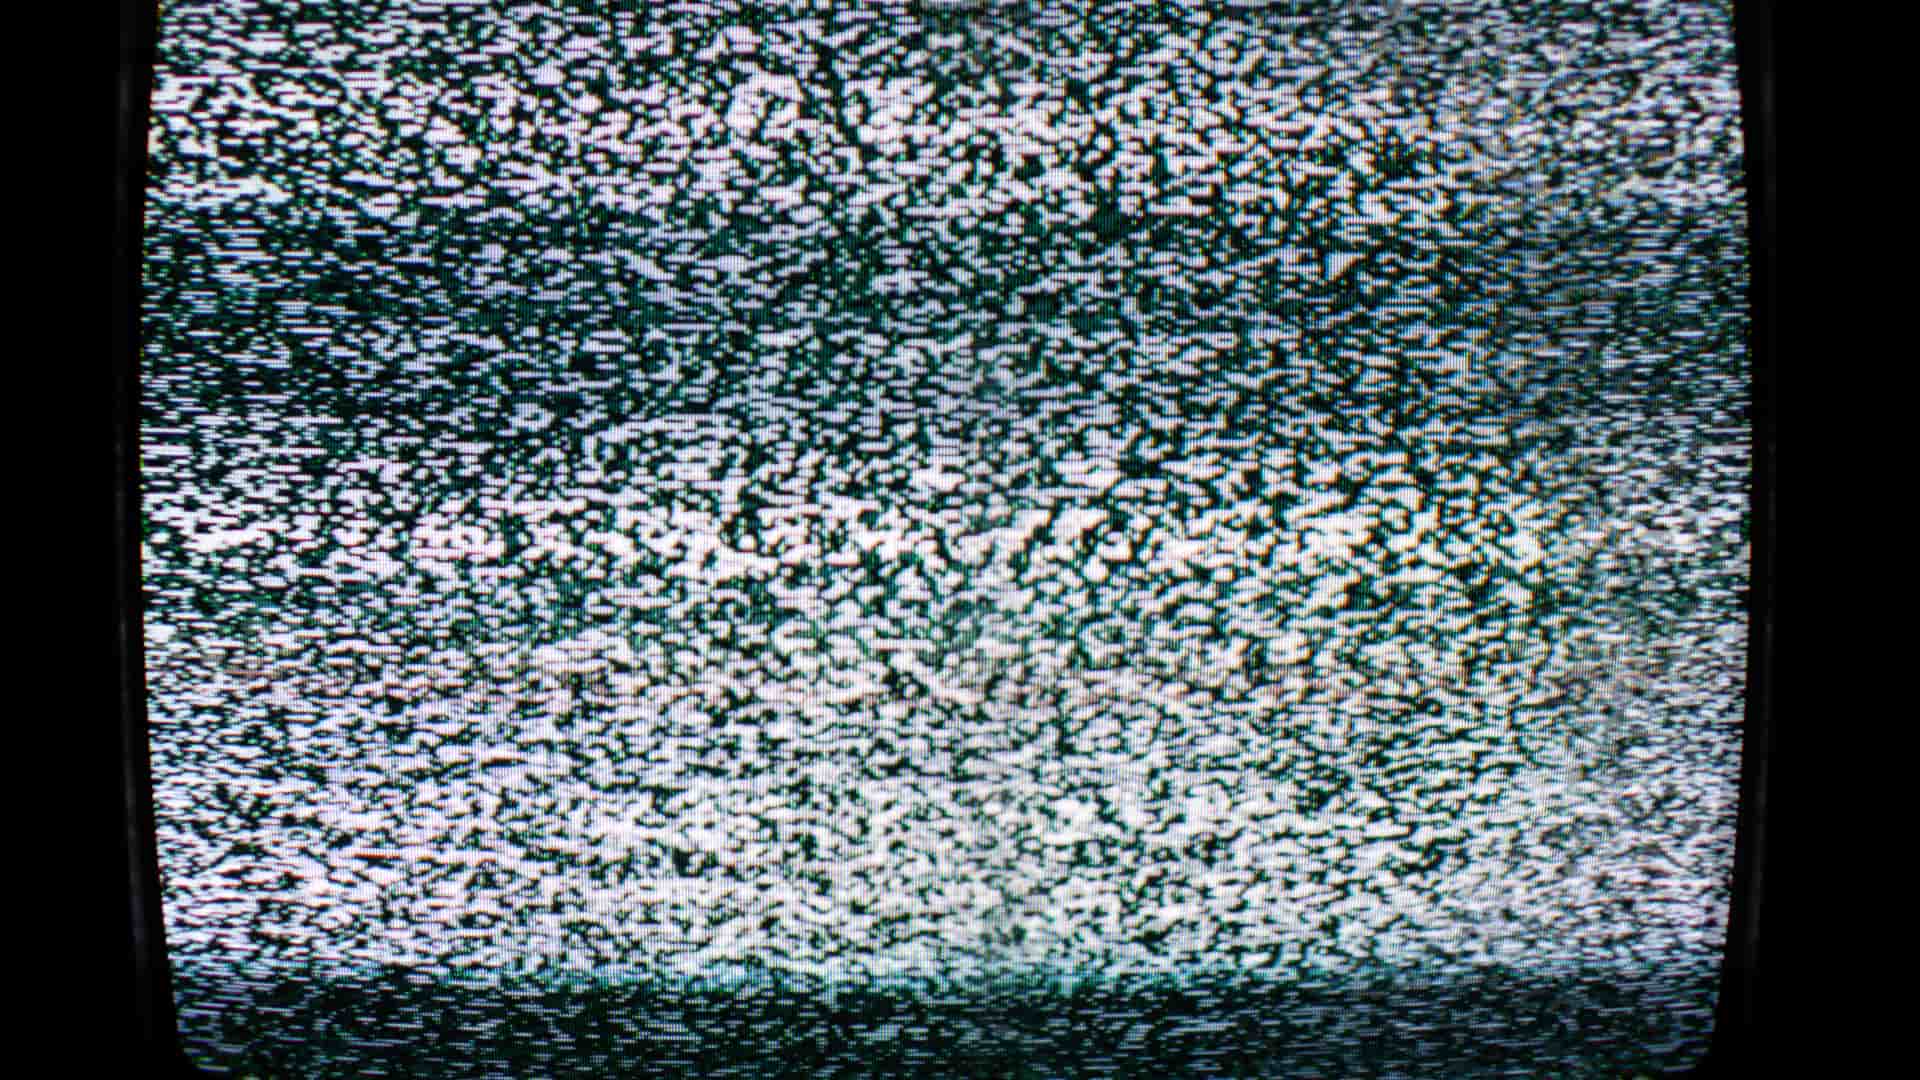 Televisor sin señal de imágen representa la desaparición de canal plus que antes se podia ver con movistar